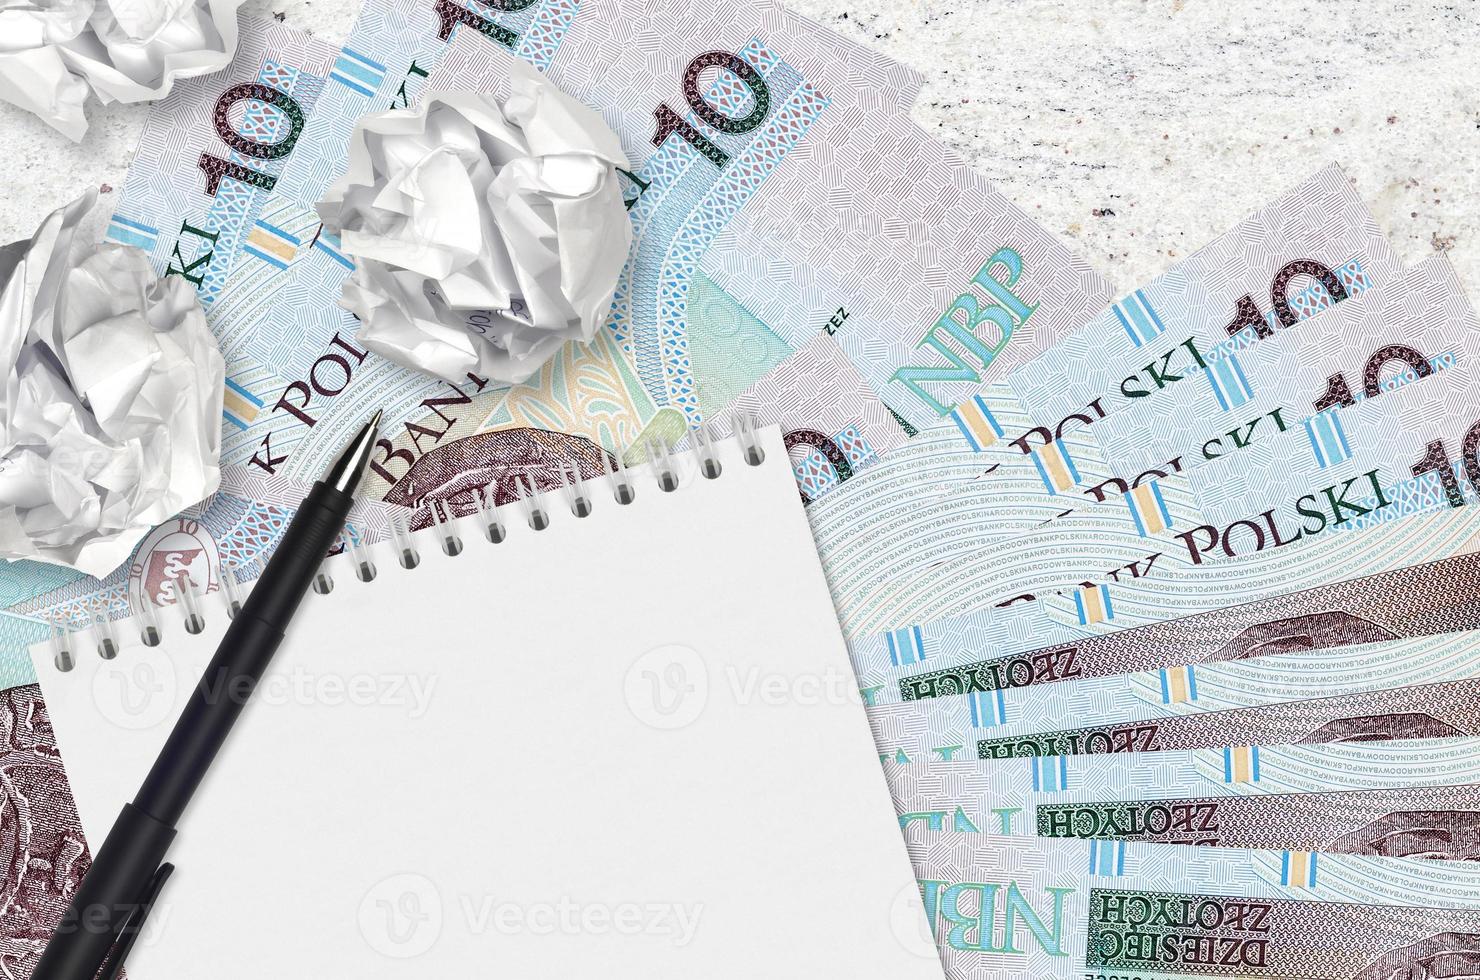 10 Pools zloty rekeningen en ballen van verfrommeld papier met blanco kladblok. slecht ideeën of minder van inspiratie concept. zoeken ideeën voor investering foto